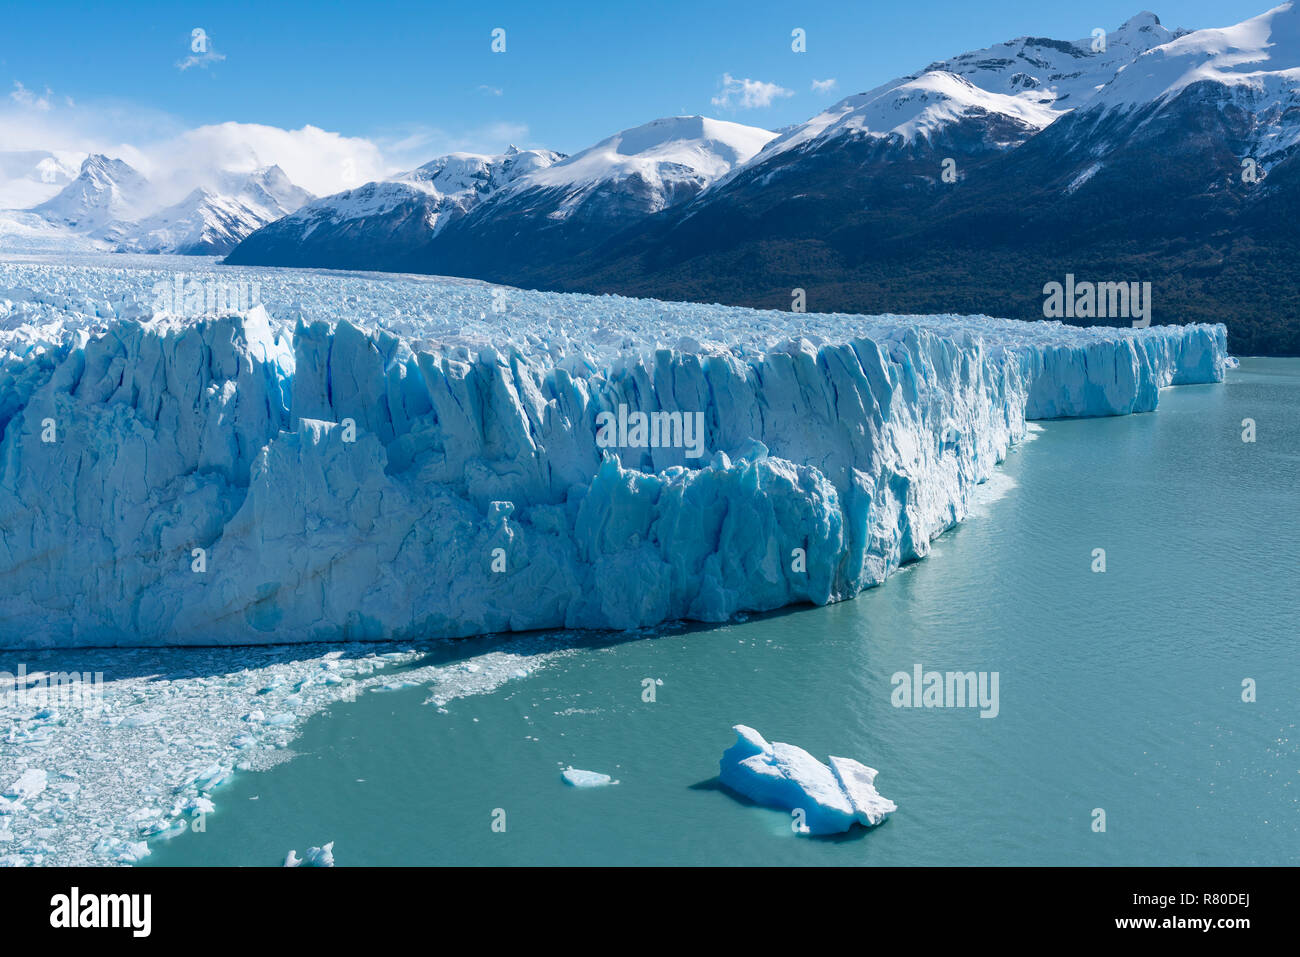 Perito Moreno Glacier in Argentina Stock Photo